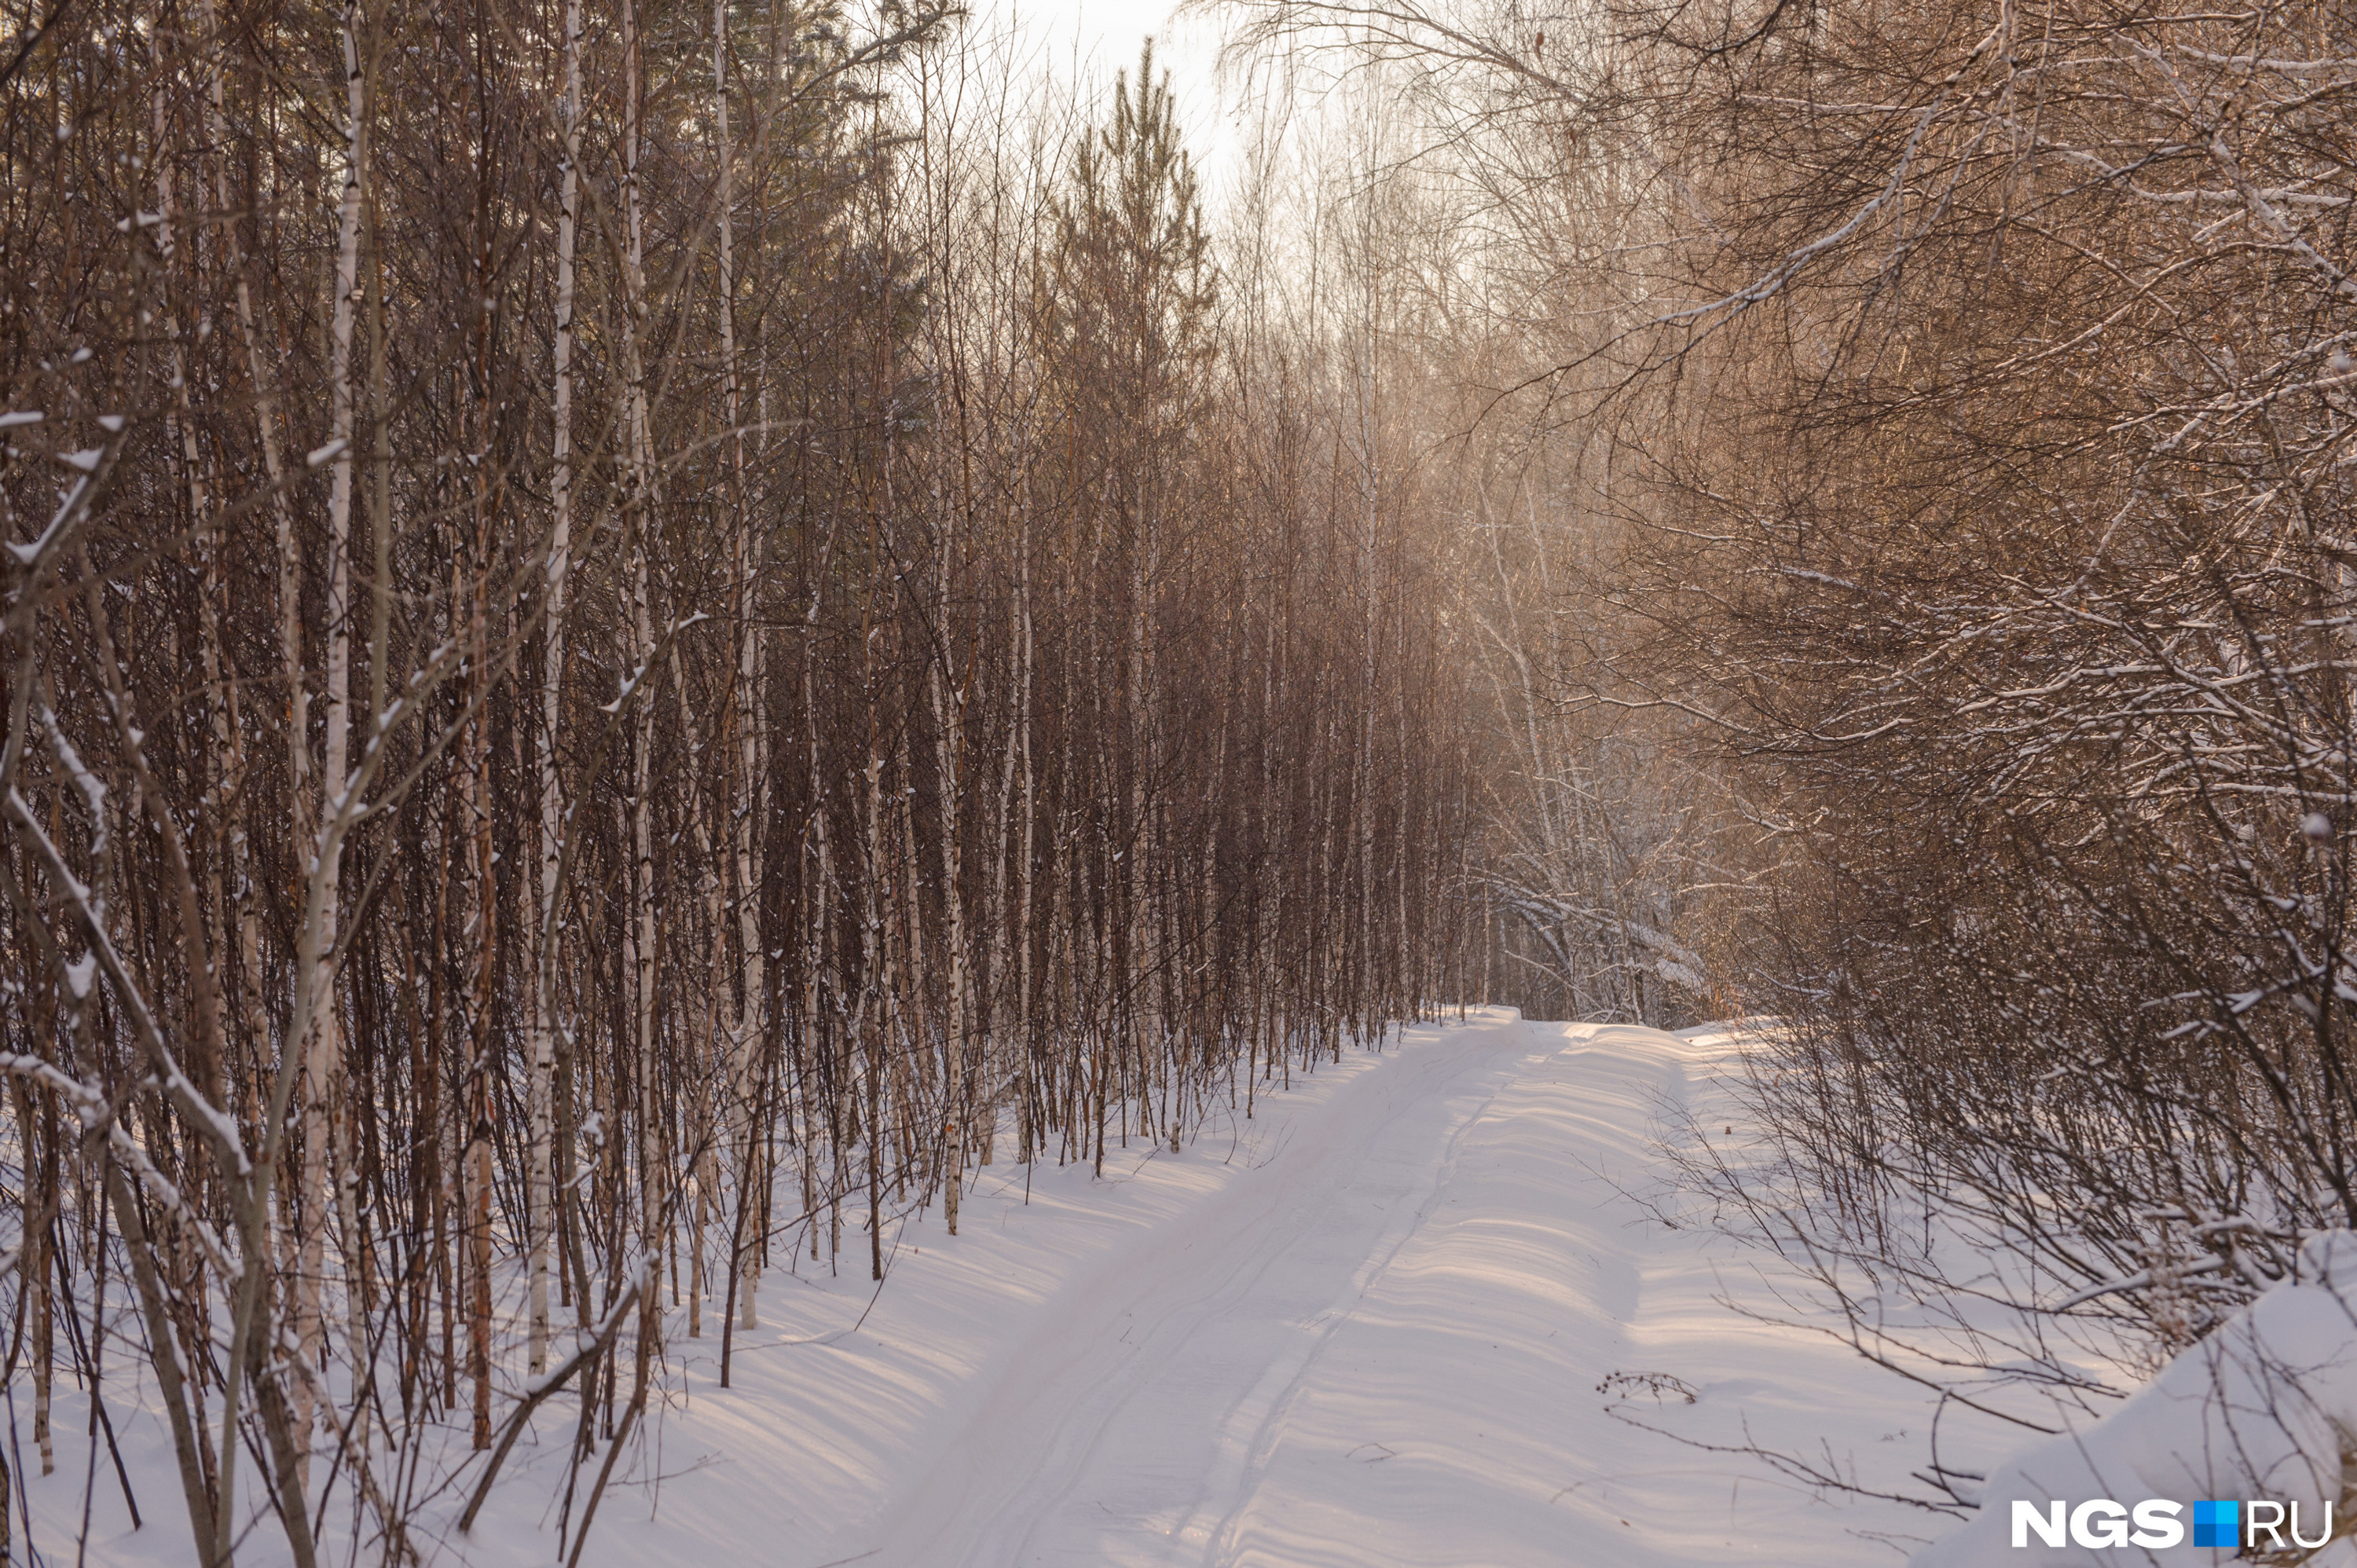 Белогуры появились в начале 2000-х — летом до них можно доехать на машине, зимой нужно идти пешком из деревни Кругликово 